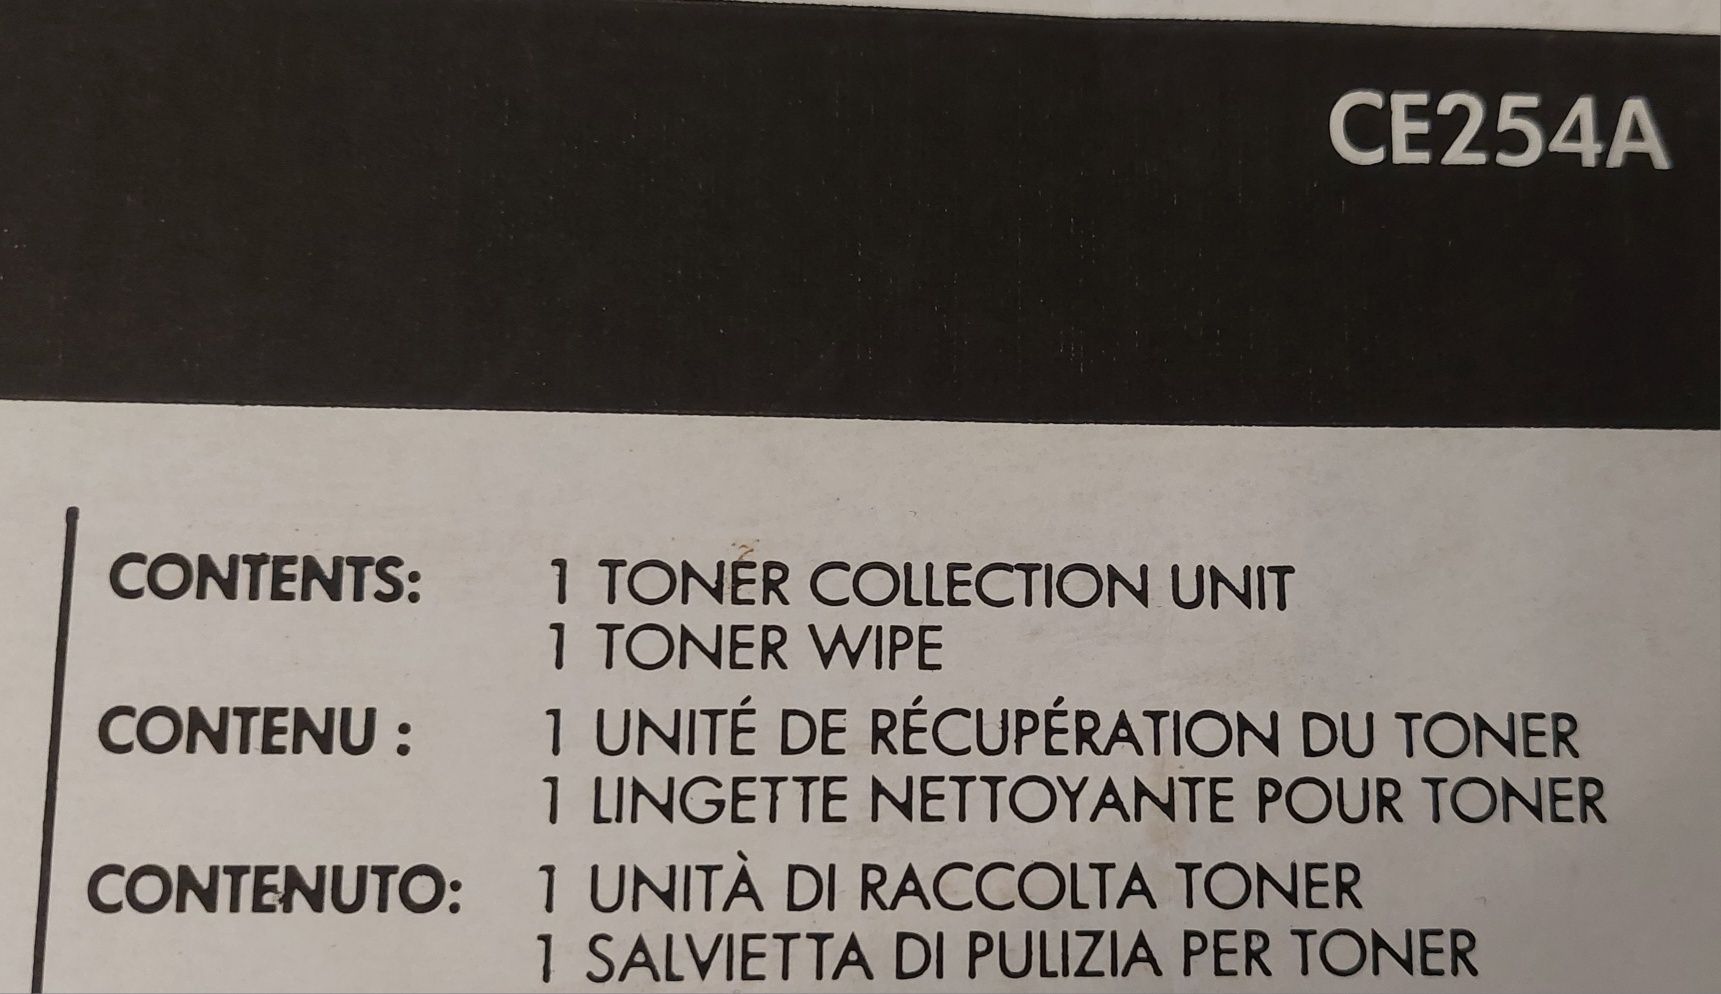 Vand HP toner collection unit CE254A